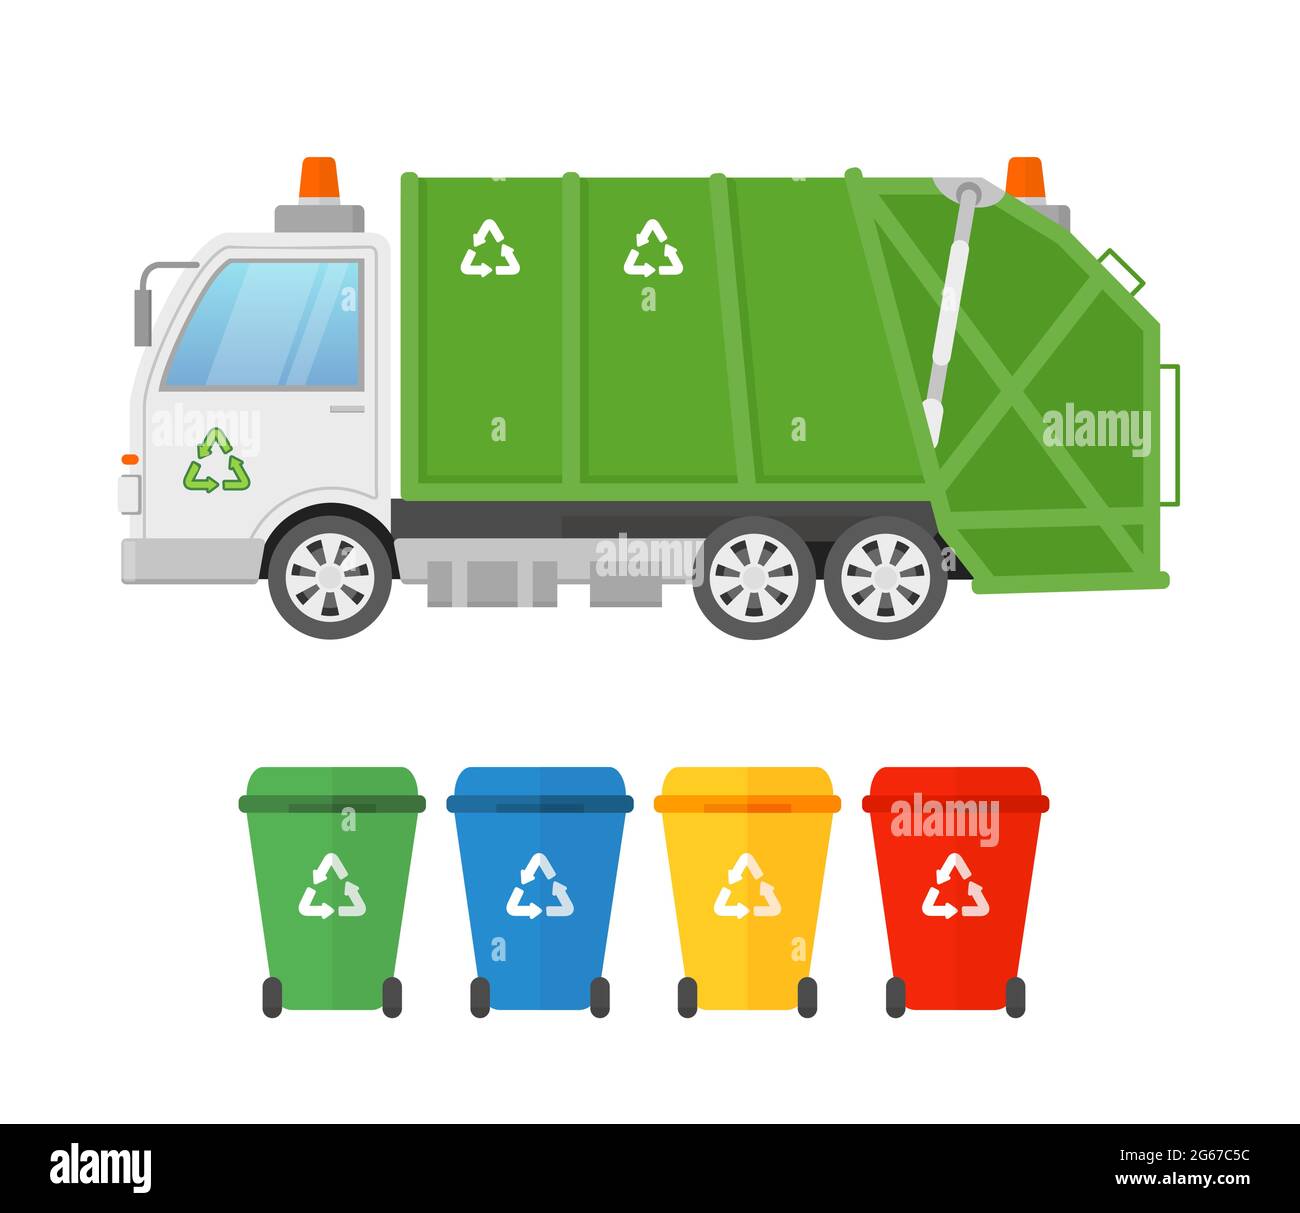 Vektor-Illustration von städtischen Sanitär-Fahrzeug Mülllader LKW und Container für verschiedene Arten von Müll. Abfallsammlung und -Transport Stock Vektor